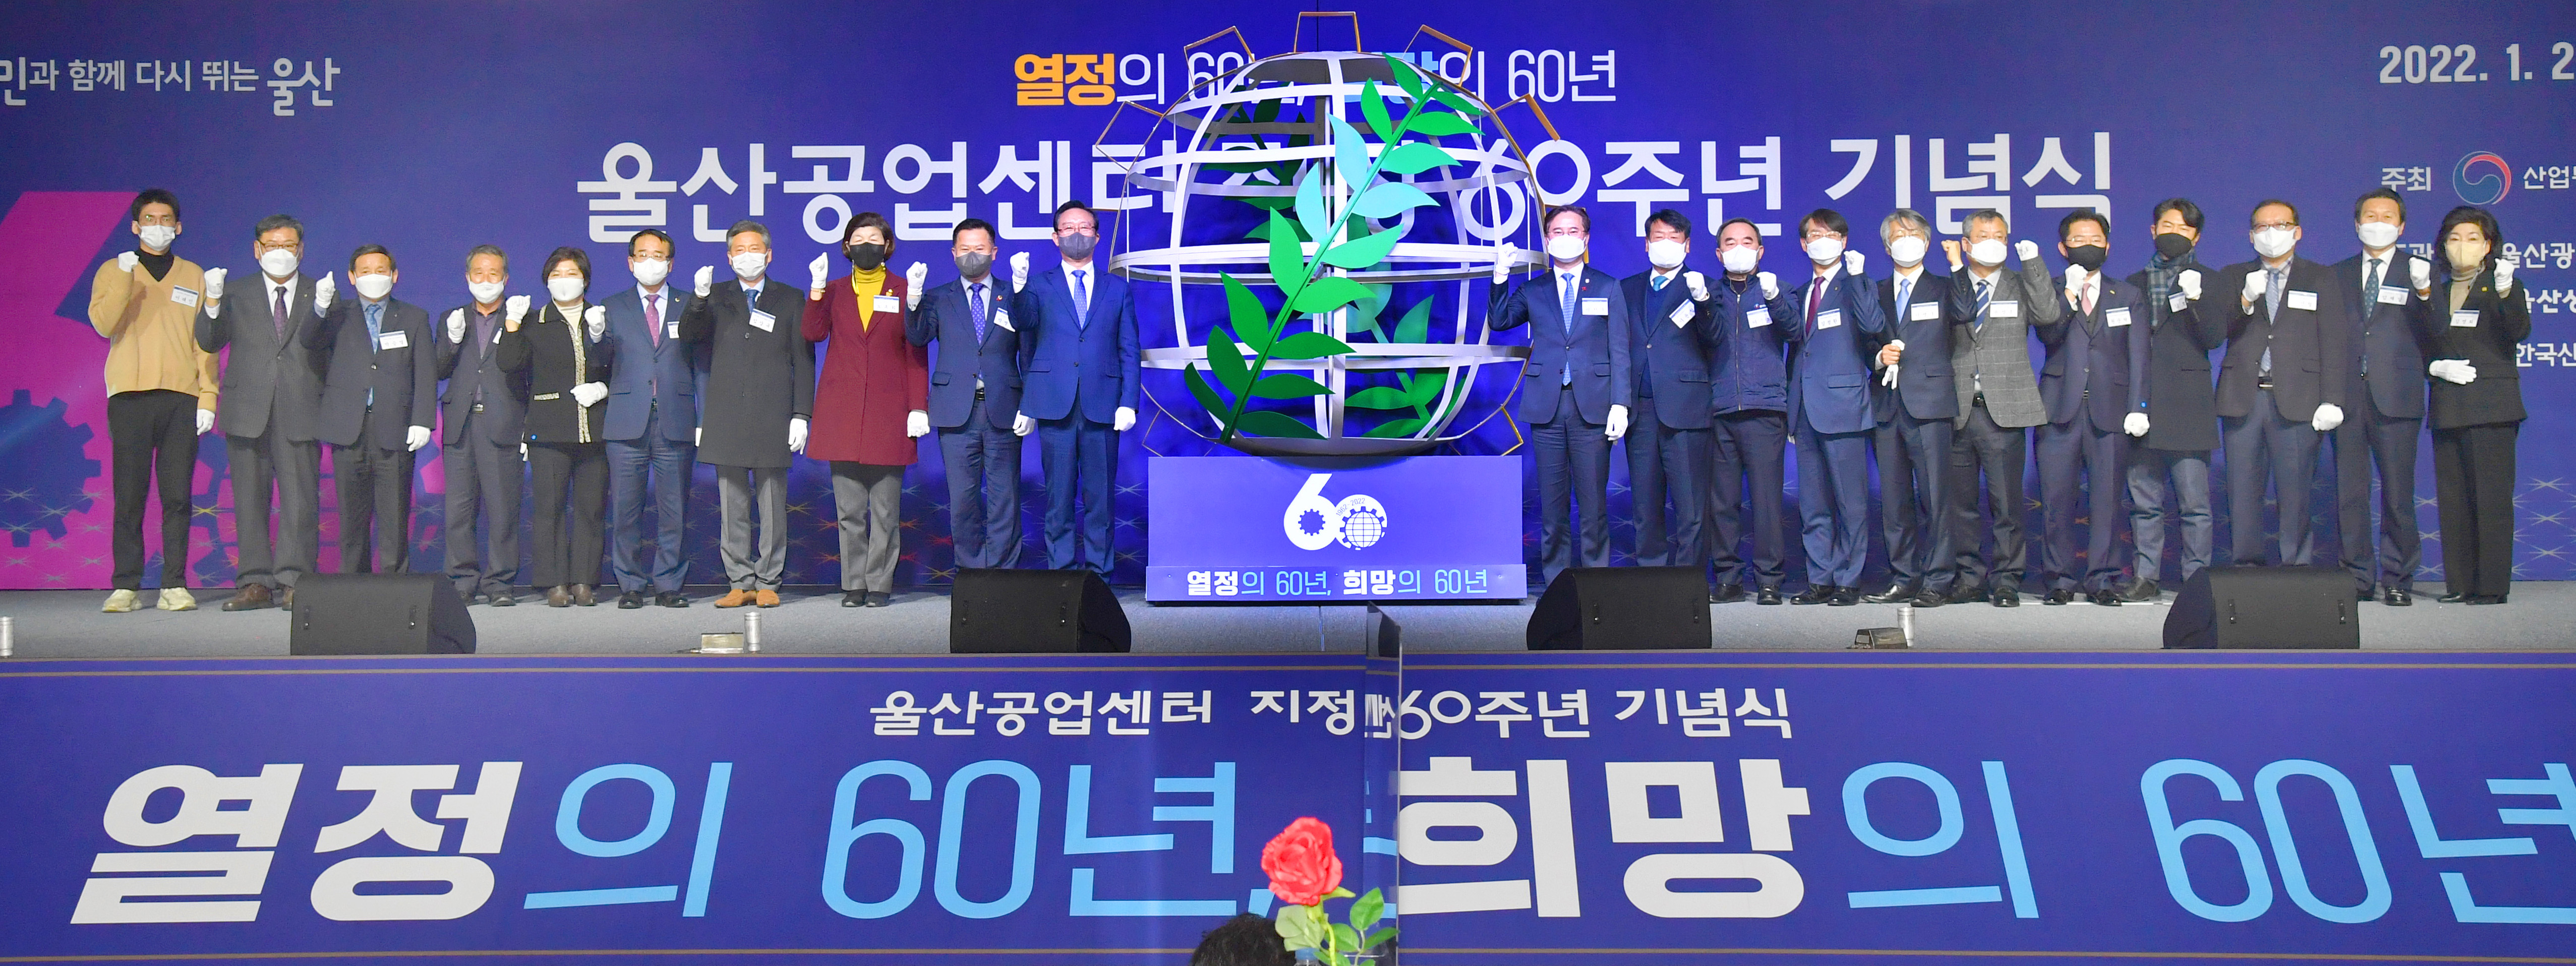 울산시 ‘공업지구 지정 60주년’ 기념식 개최